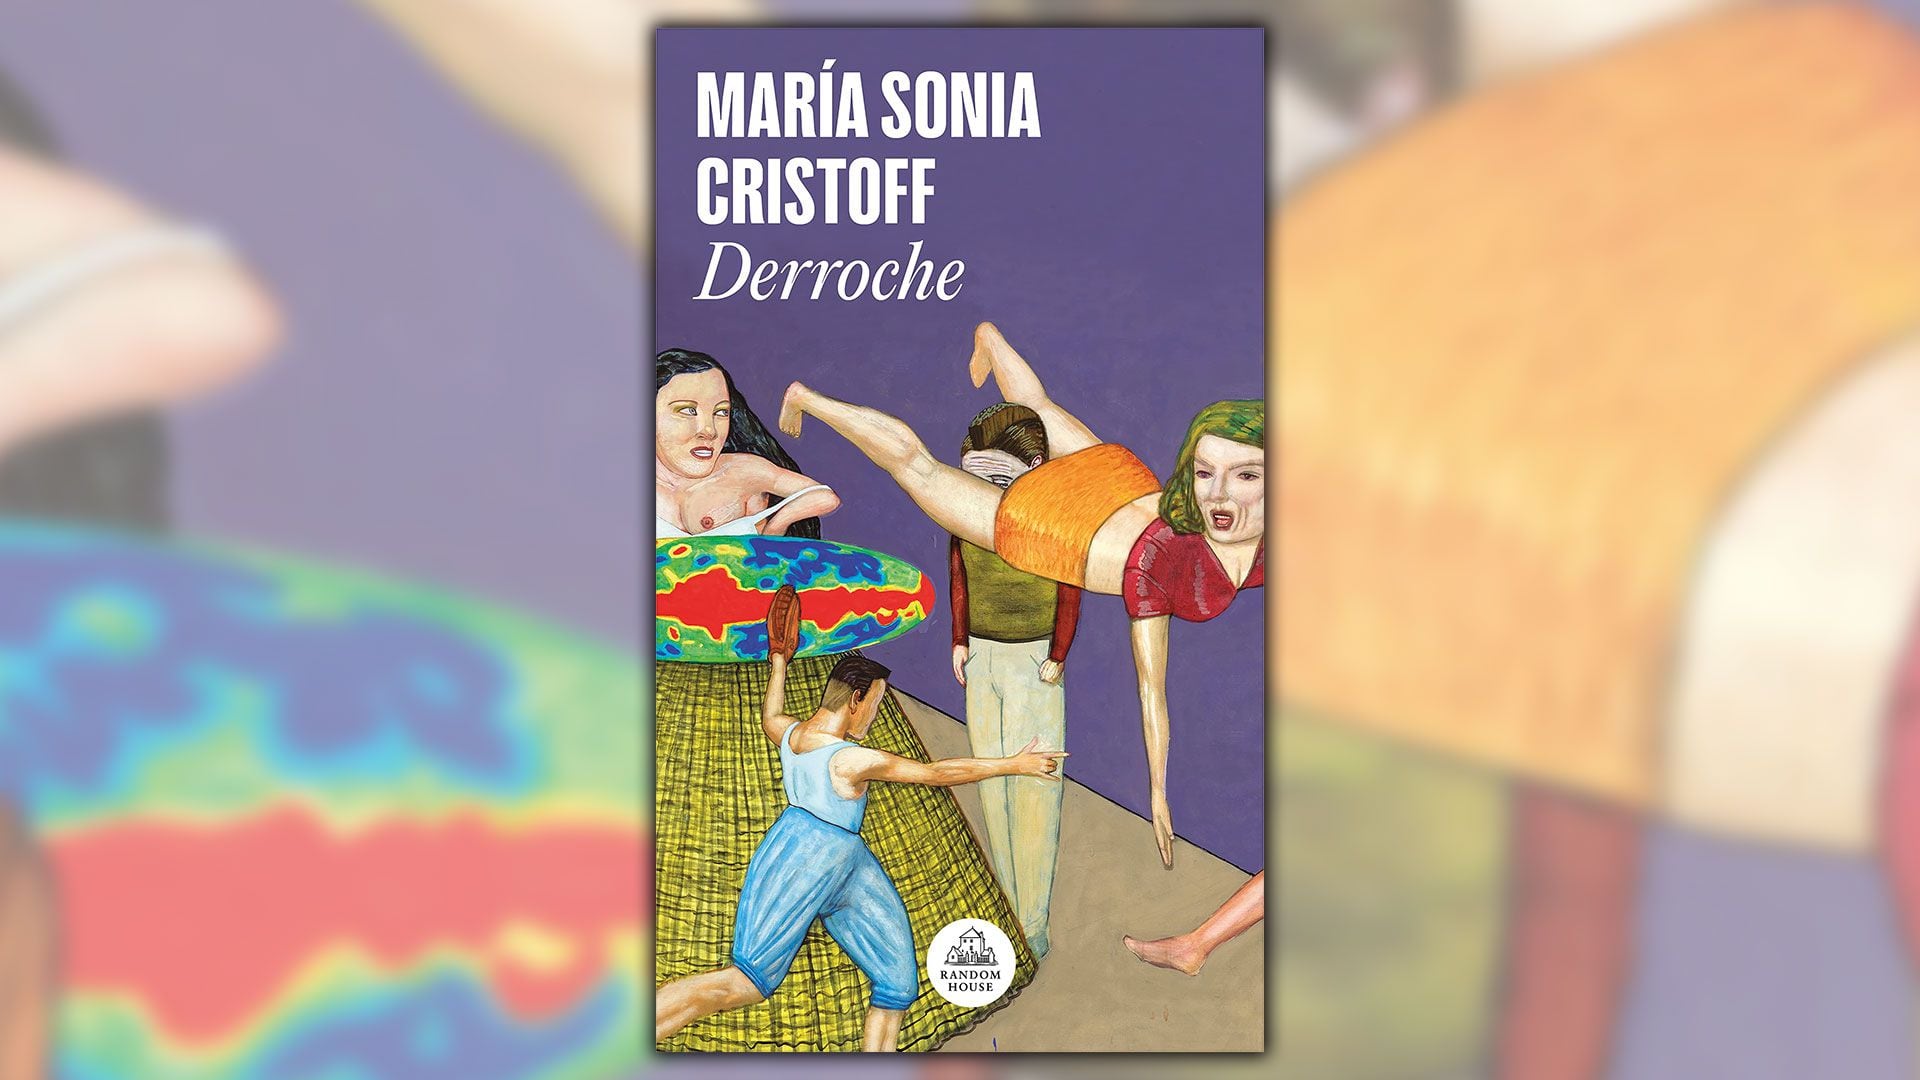 Portada de "Derroche", novela de María Sonia Cristoff